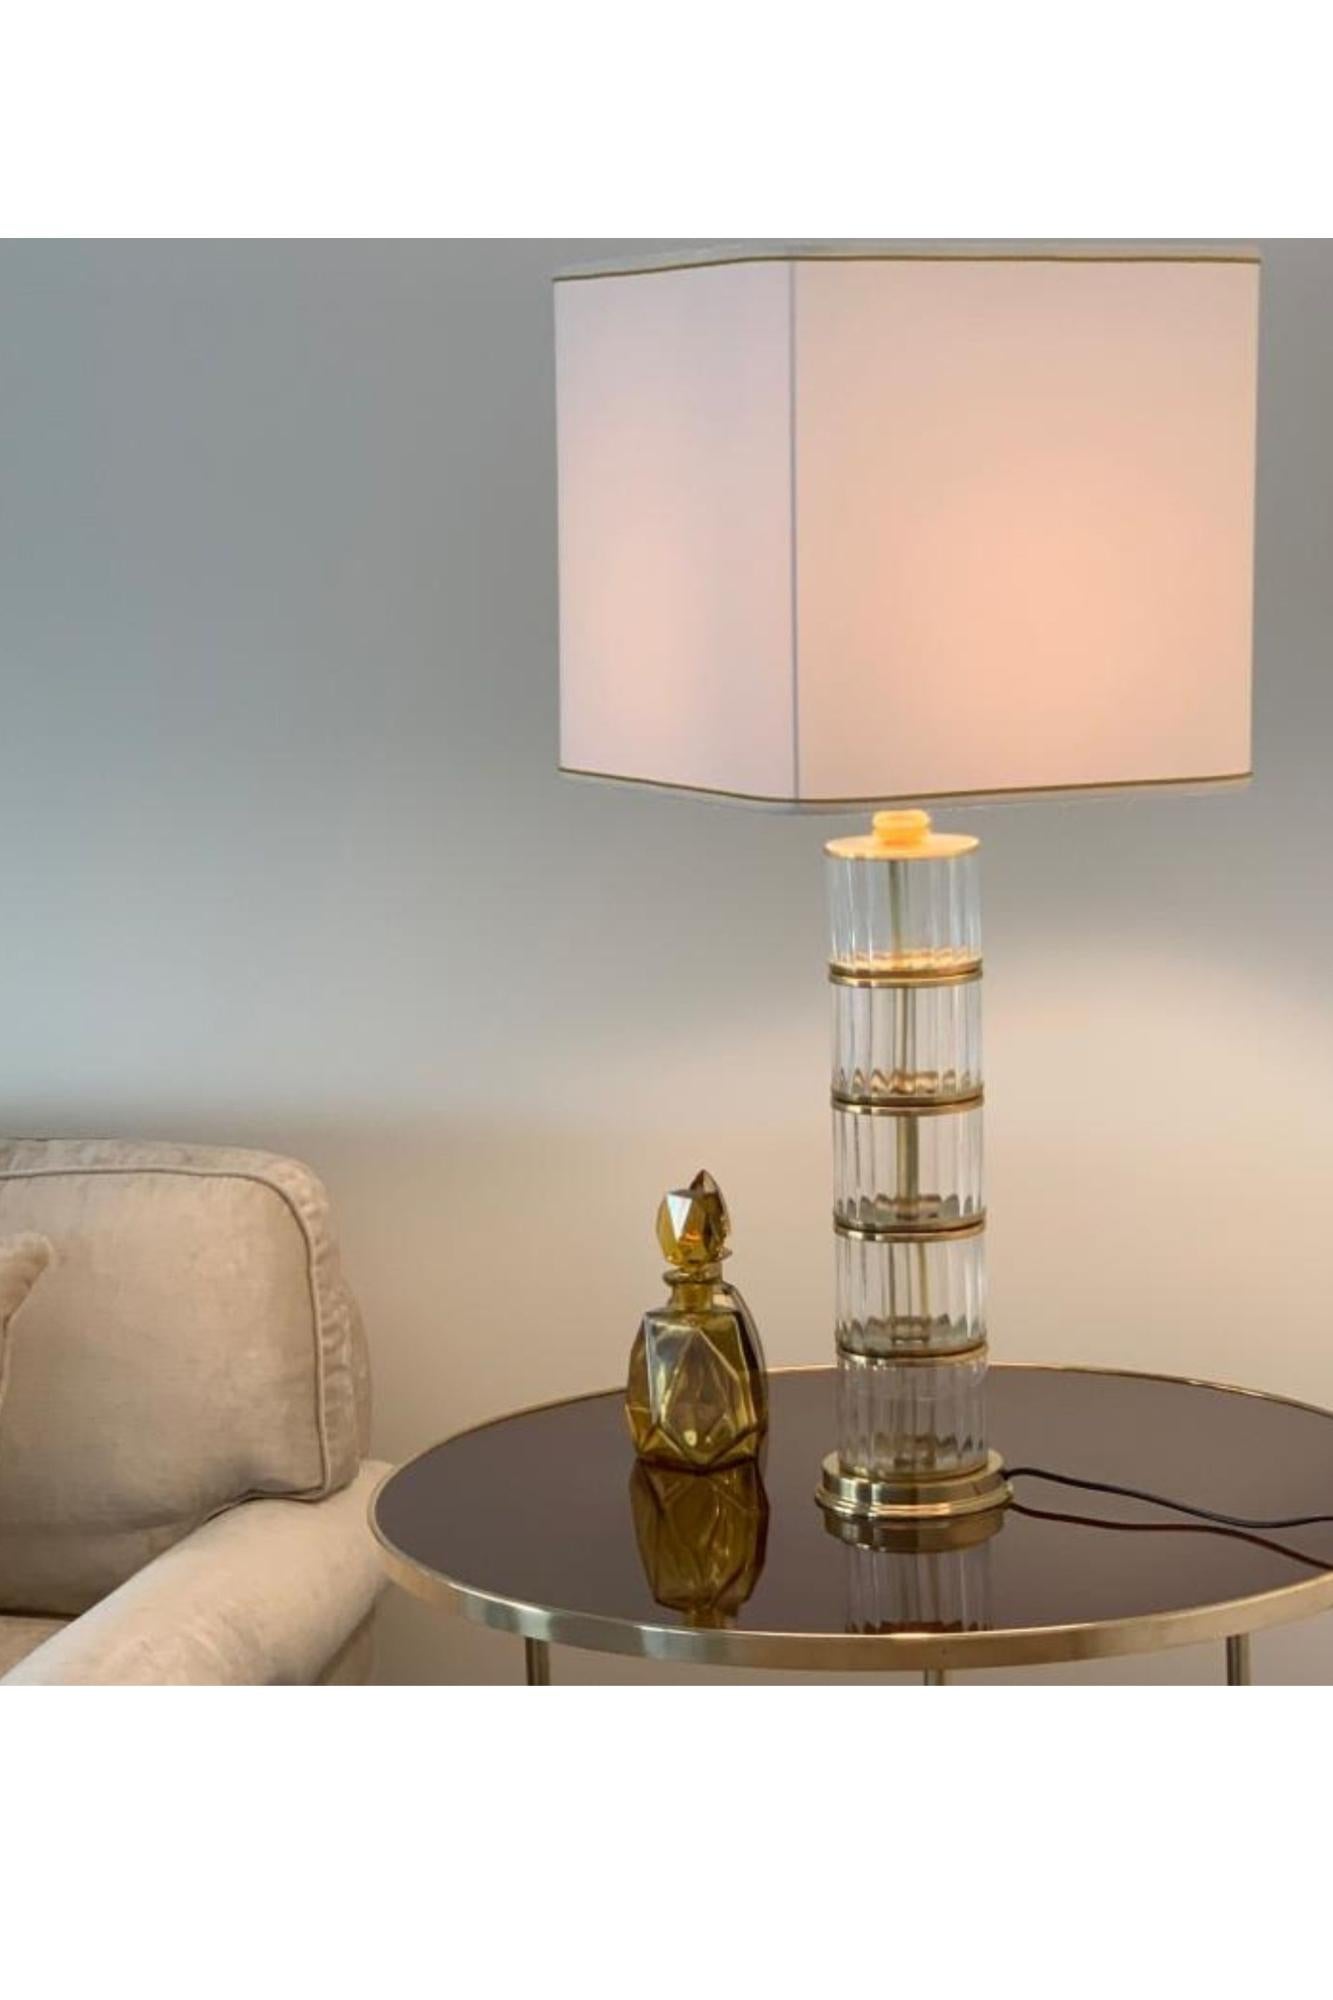 Valorizza l'arredamento della tua casa con l'elegante lampada da tavolo in vetro e ottone della linea Canneté. Con la sua straordinaria combinazione di vetro e ottone, questa lampada aggiunge raffinatezza a qualsiasi stanza. Acquista ora e goditi la